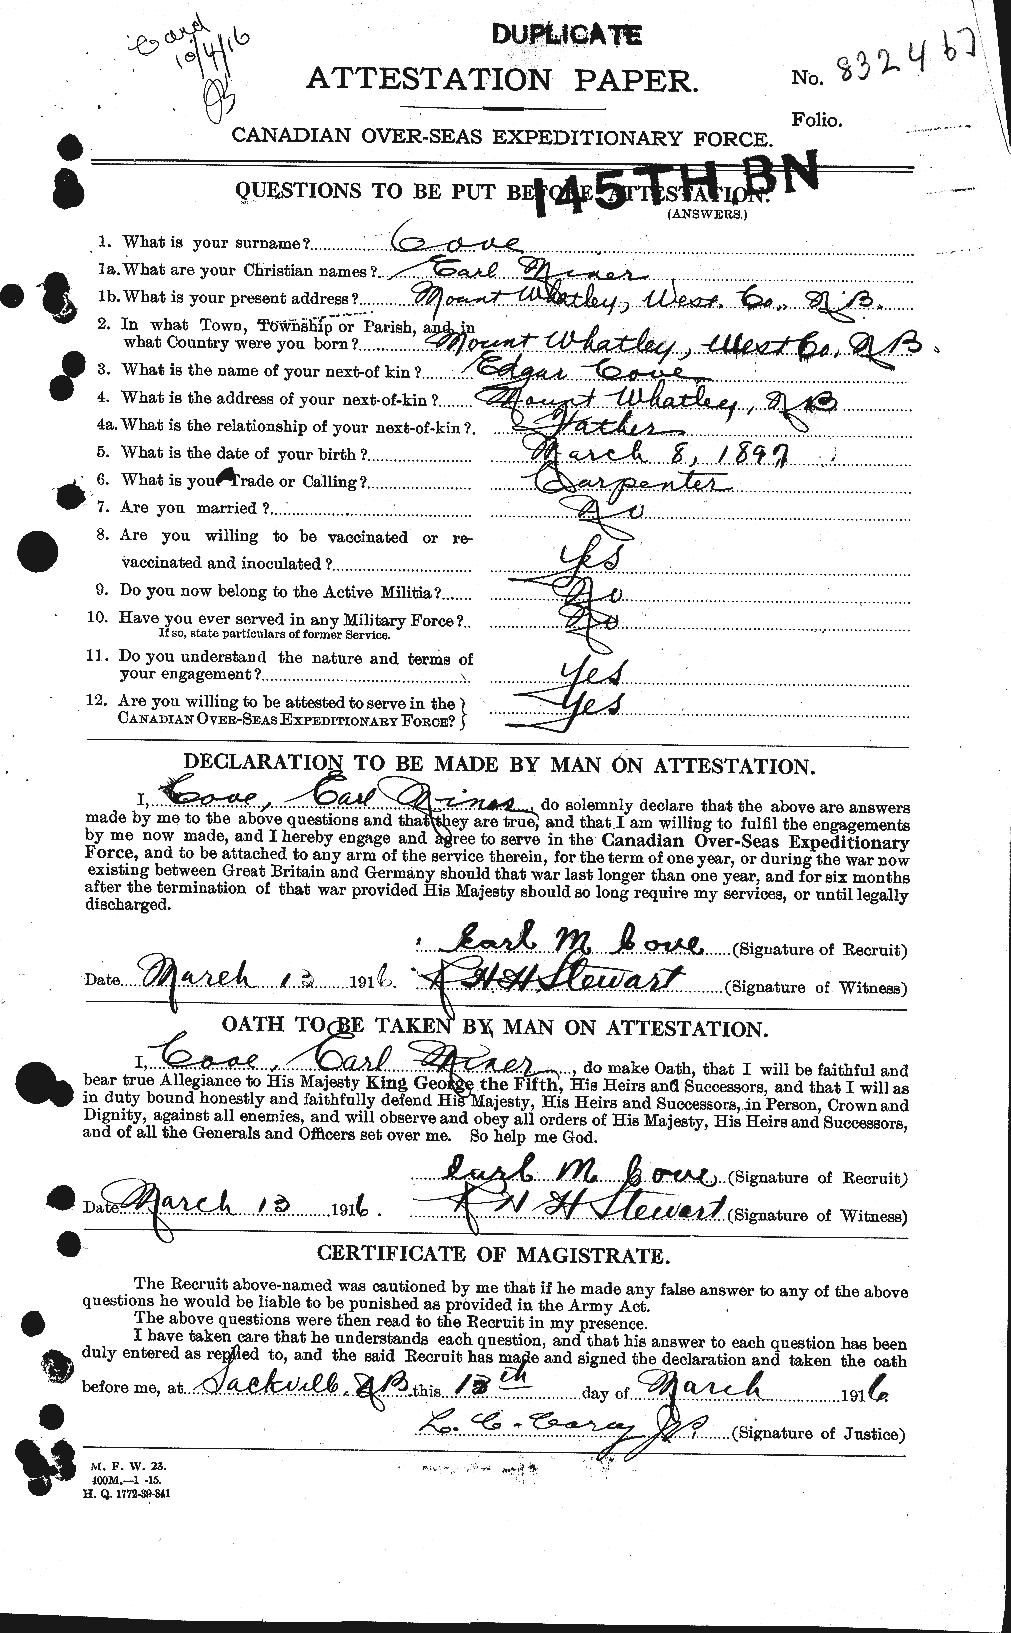 Dossiers du Personnel de la Première Guerre mondiale - CEC 059673a